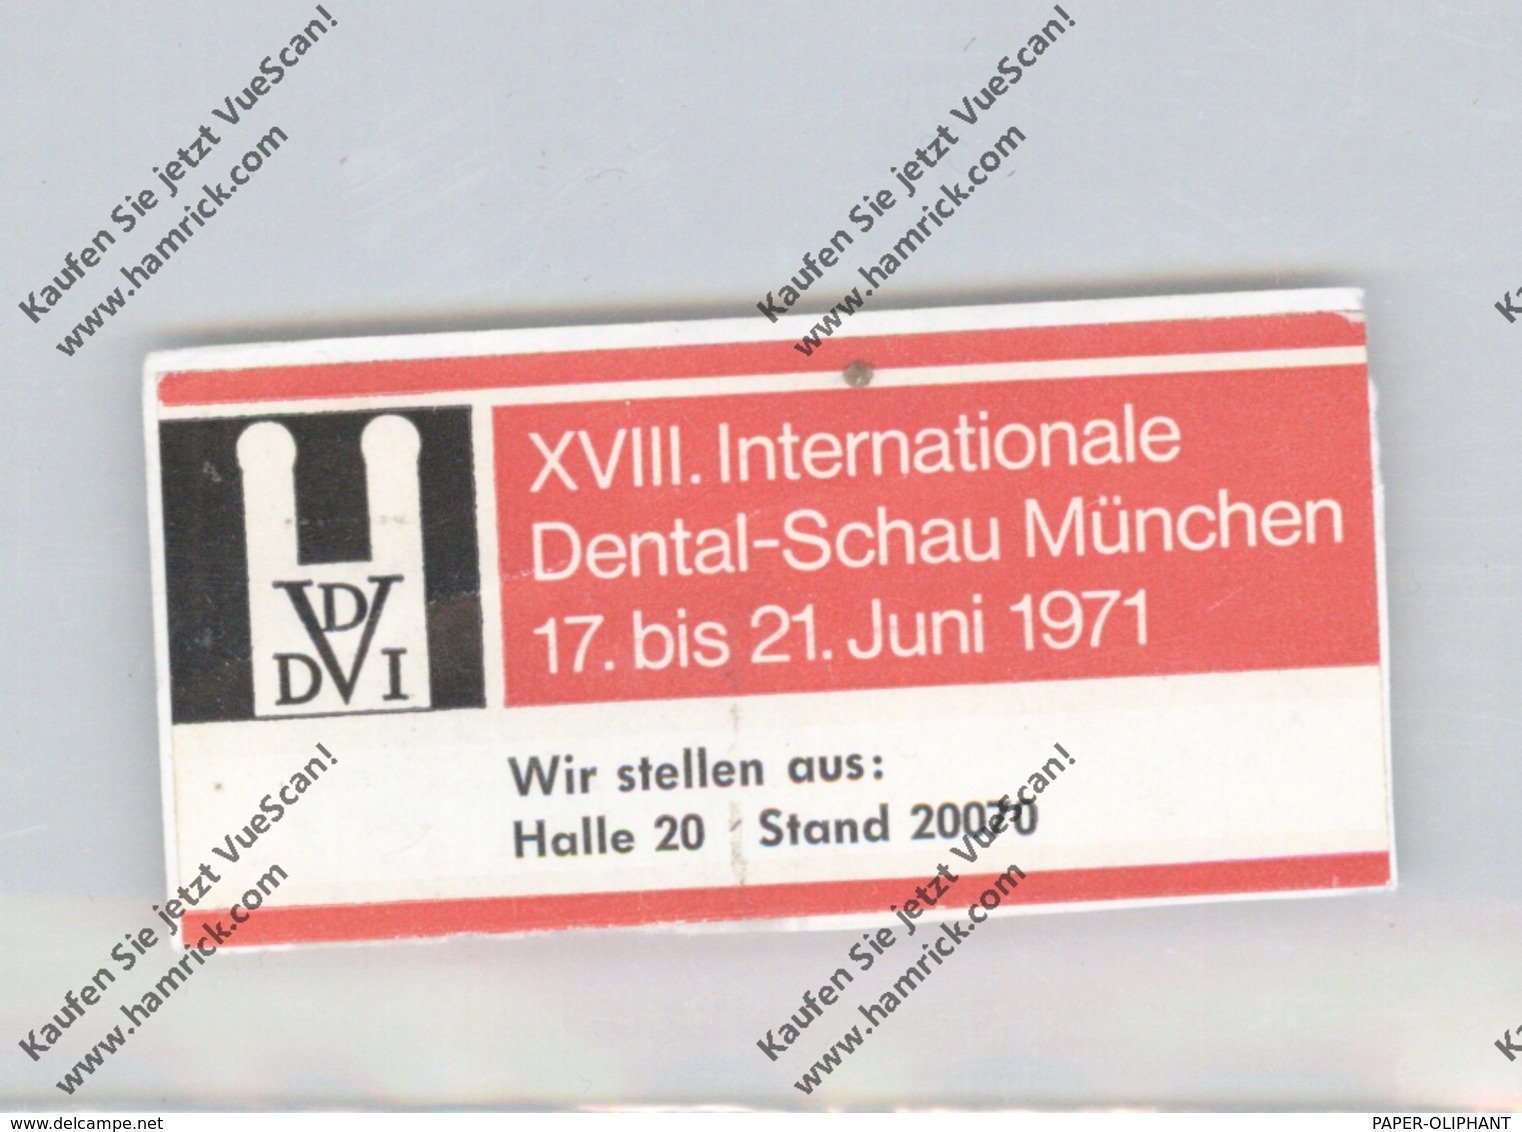 MEDIZIN - Vignette Dental-Schau München 1971 - Gesundheit